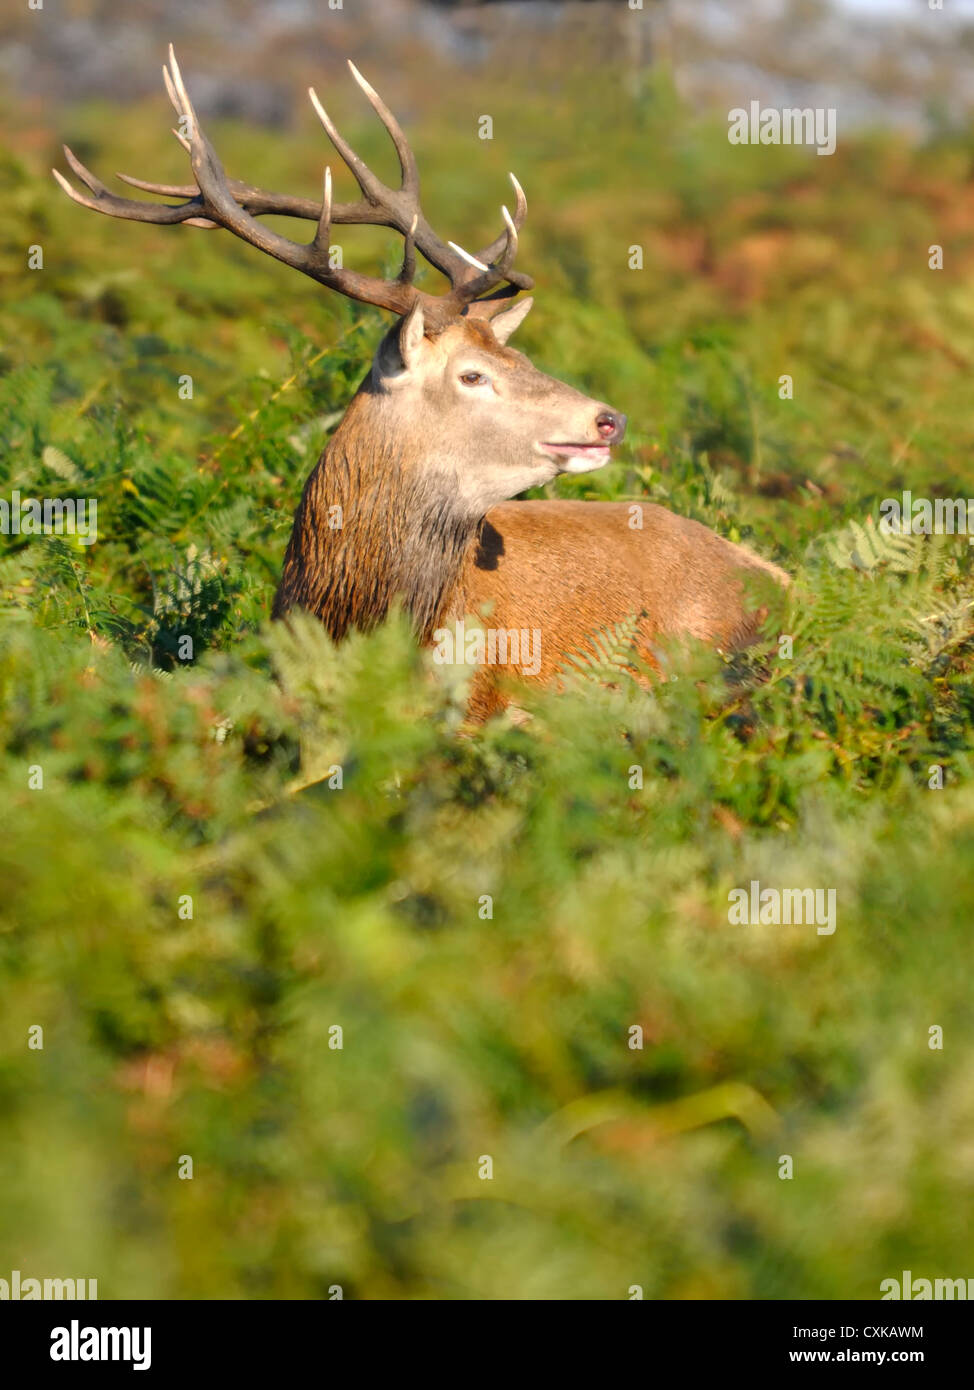 Un enterrement de vie de red deer (Cervus elaphus ) veille pour empiéter les hommes tel qu'il est dans le sous-bois Banque D'Images